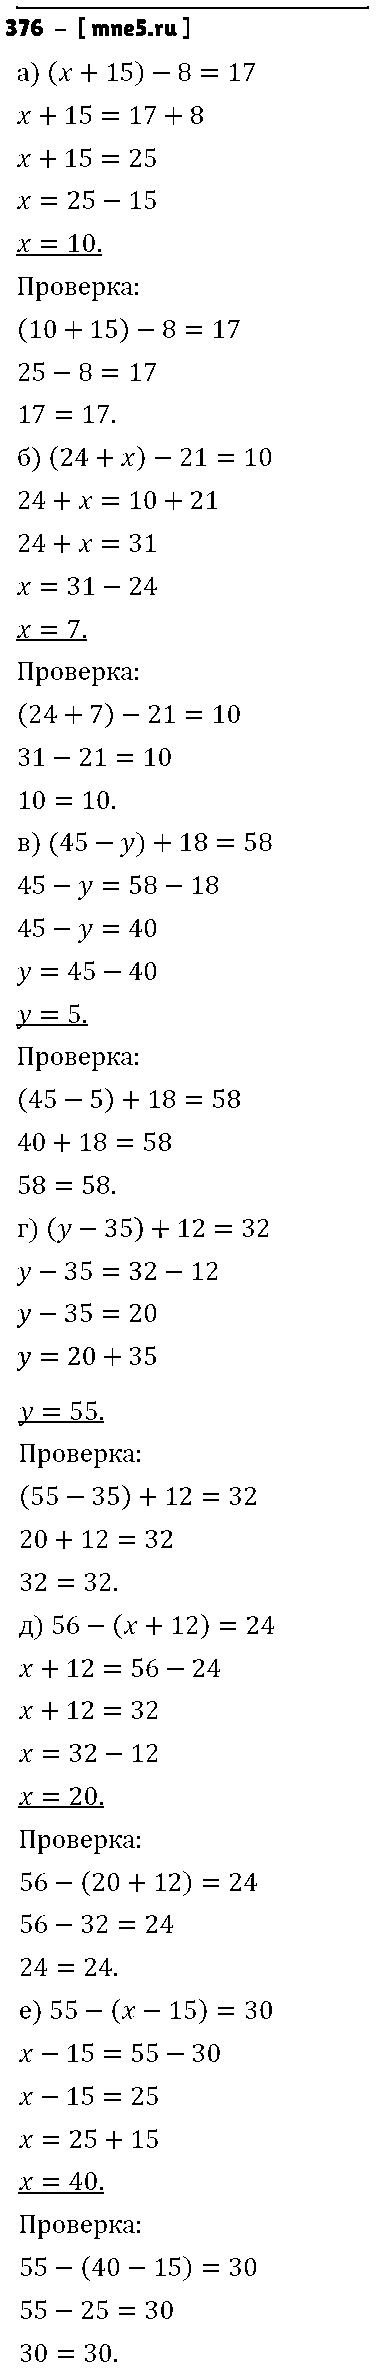 ГДЗ Математика 5 класс - 376